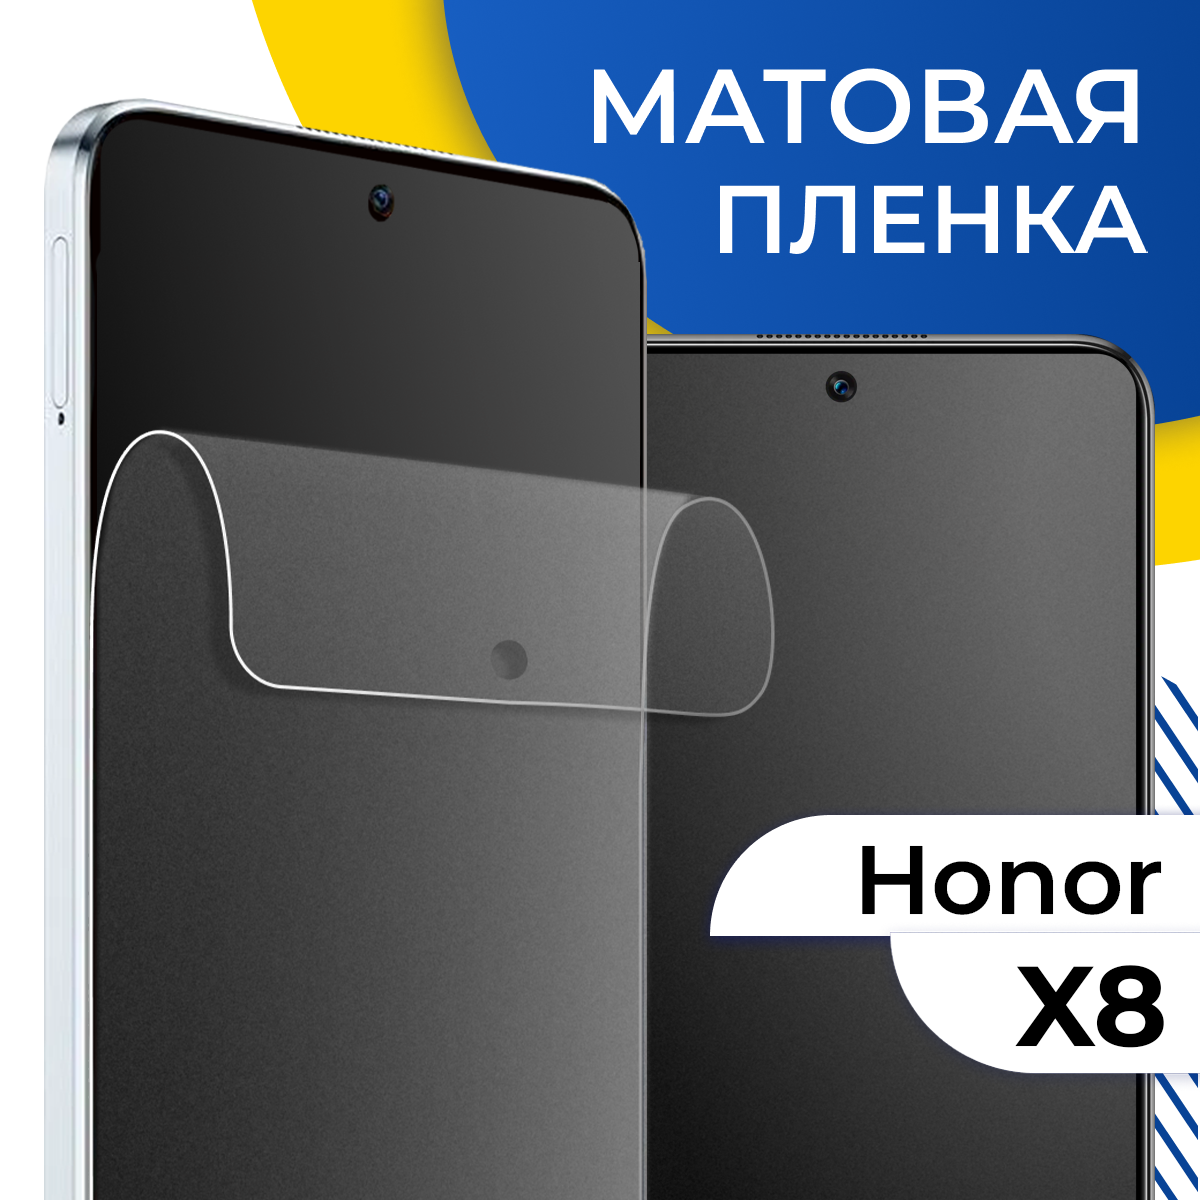 Комплект 2 шт. Матовая гидрогелевая пленка для телефона Huawei Honor X8 / Самовосстанавливающаяся защитная пленка на смартфон Хуавей Хонор Х8 / Противоударная